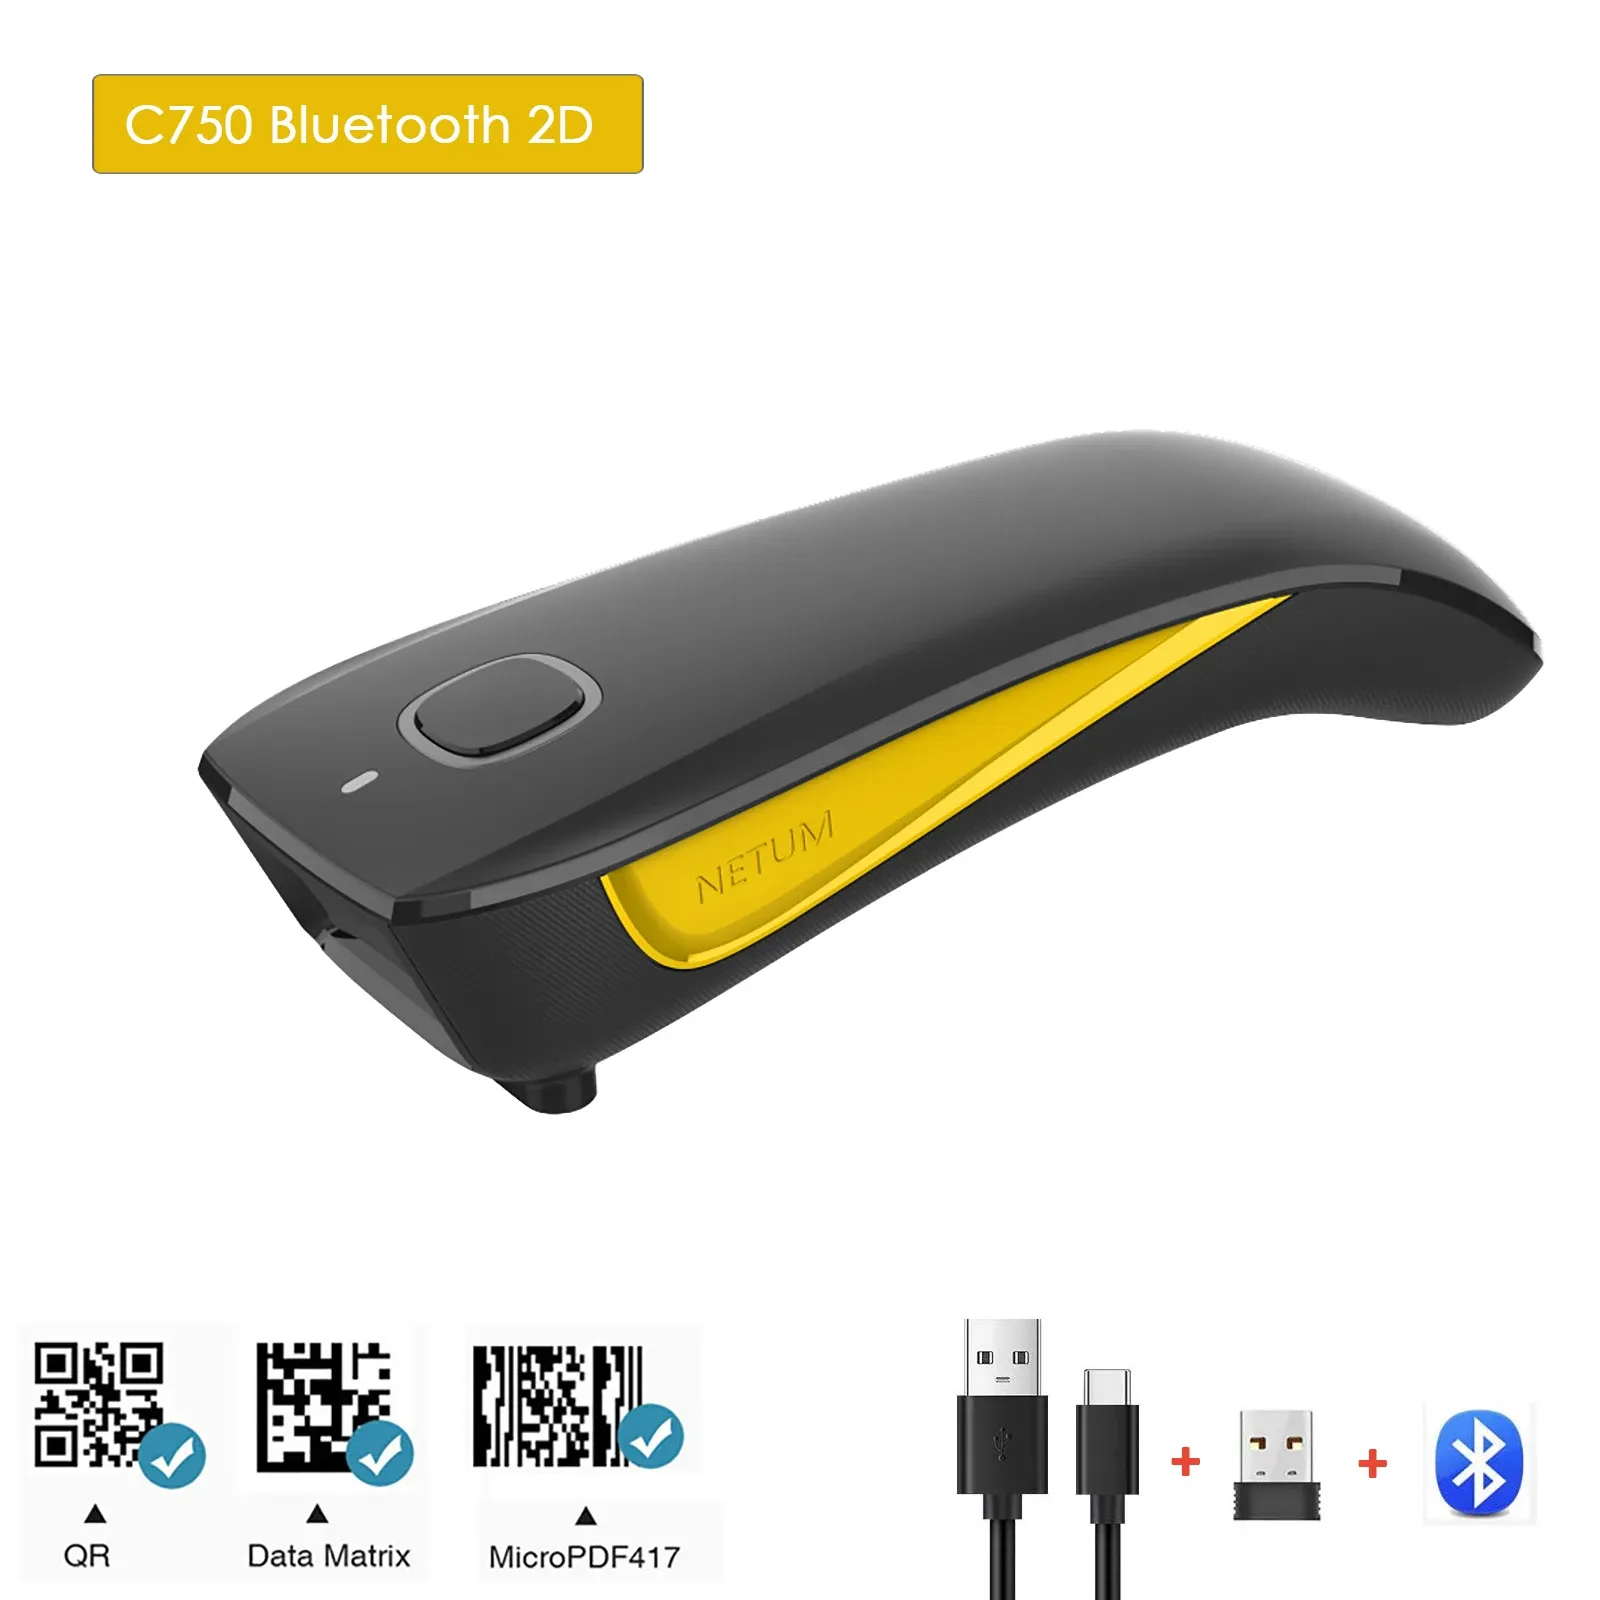 Escáneres 2D Barcode Scanner Netum C750 Bluetooth Wireless Handheld Pocket Qr Bar Bar Code Matrix PDF417 Lector para el pago móvil de la tienda